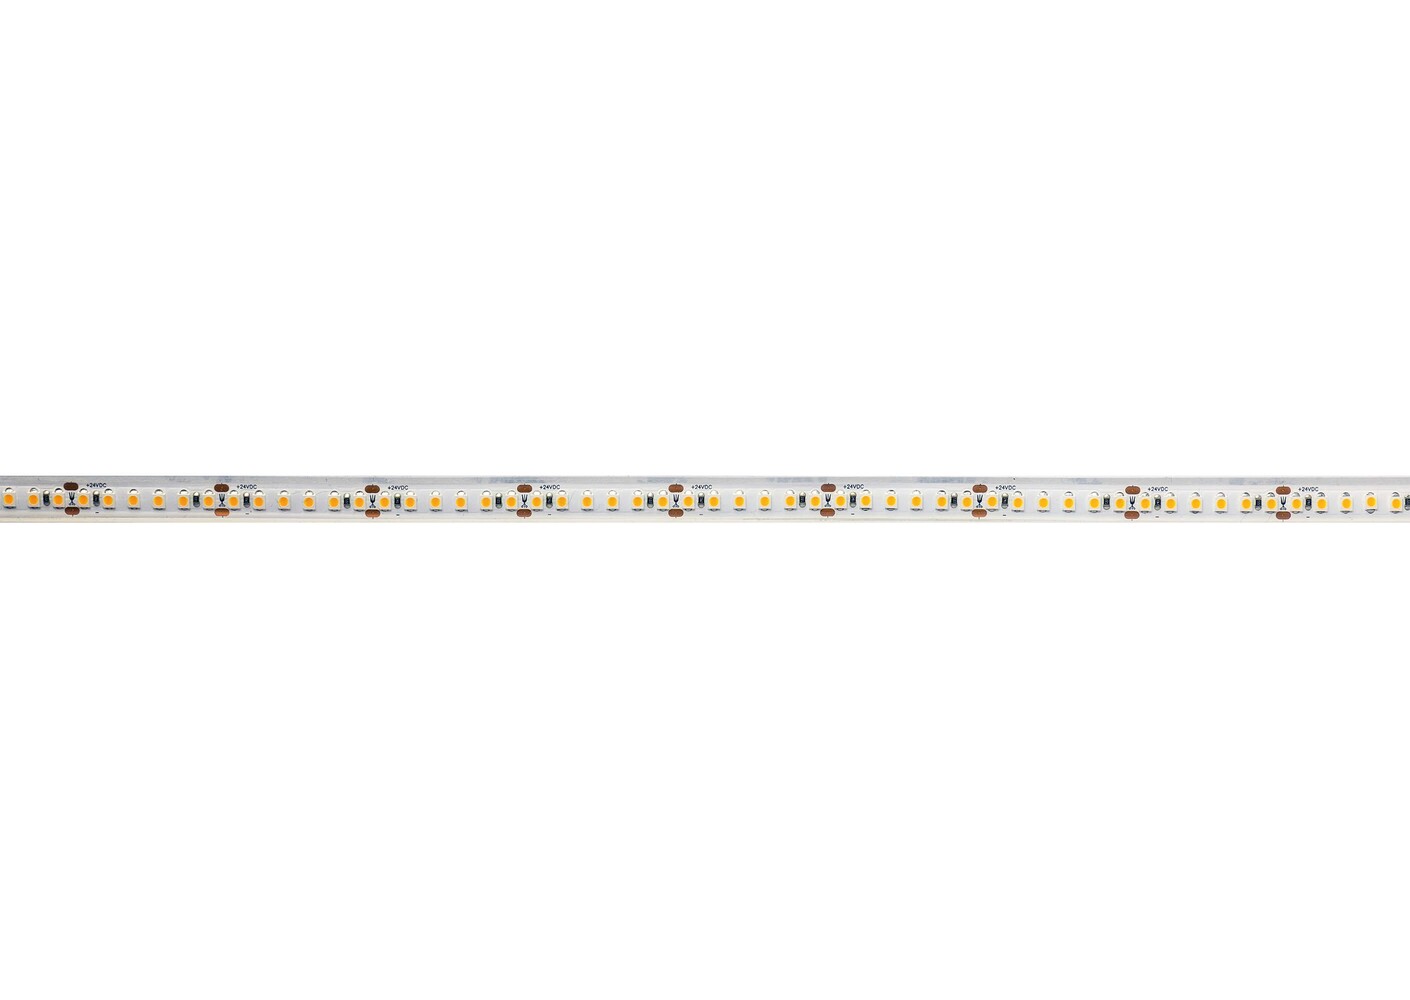 Hochwertiger flexibler LED-Streifen von der Marke Deko-Light